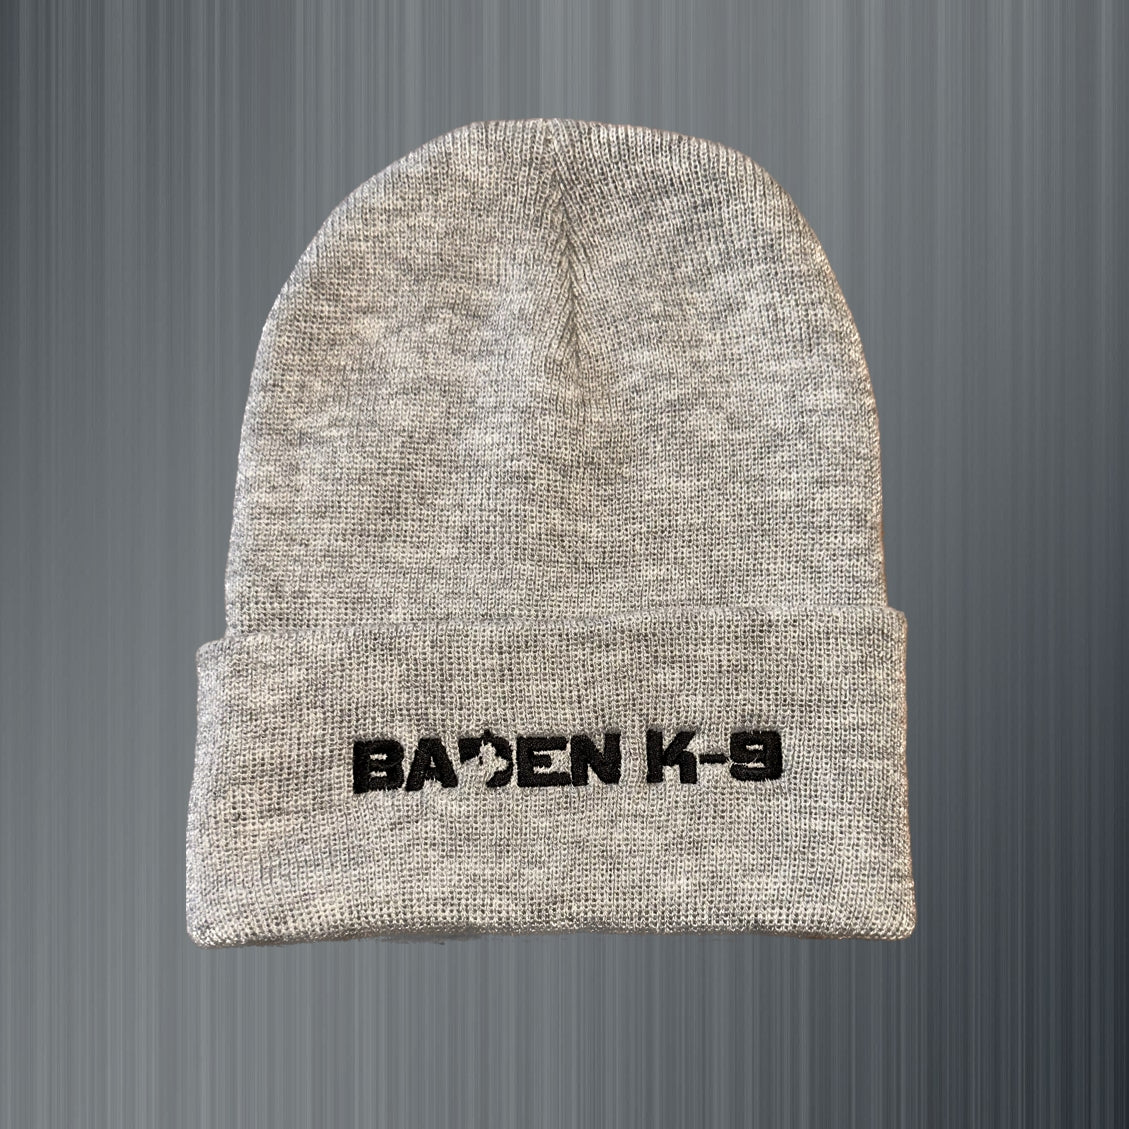 Baden K9 Toque